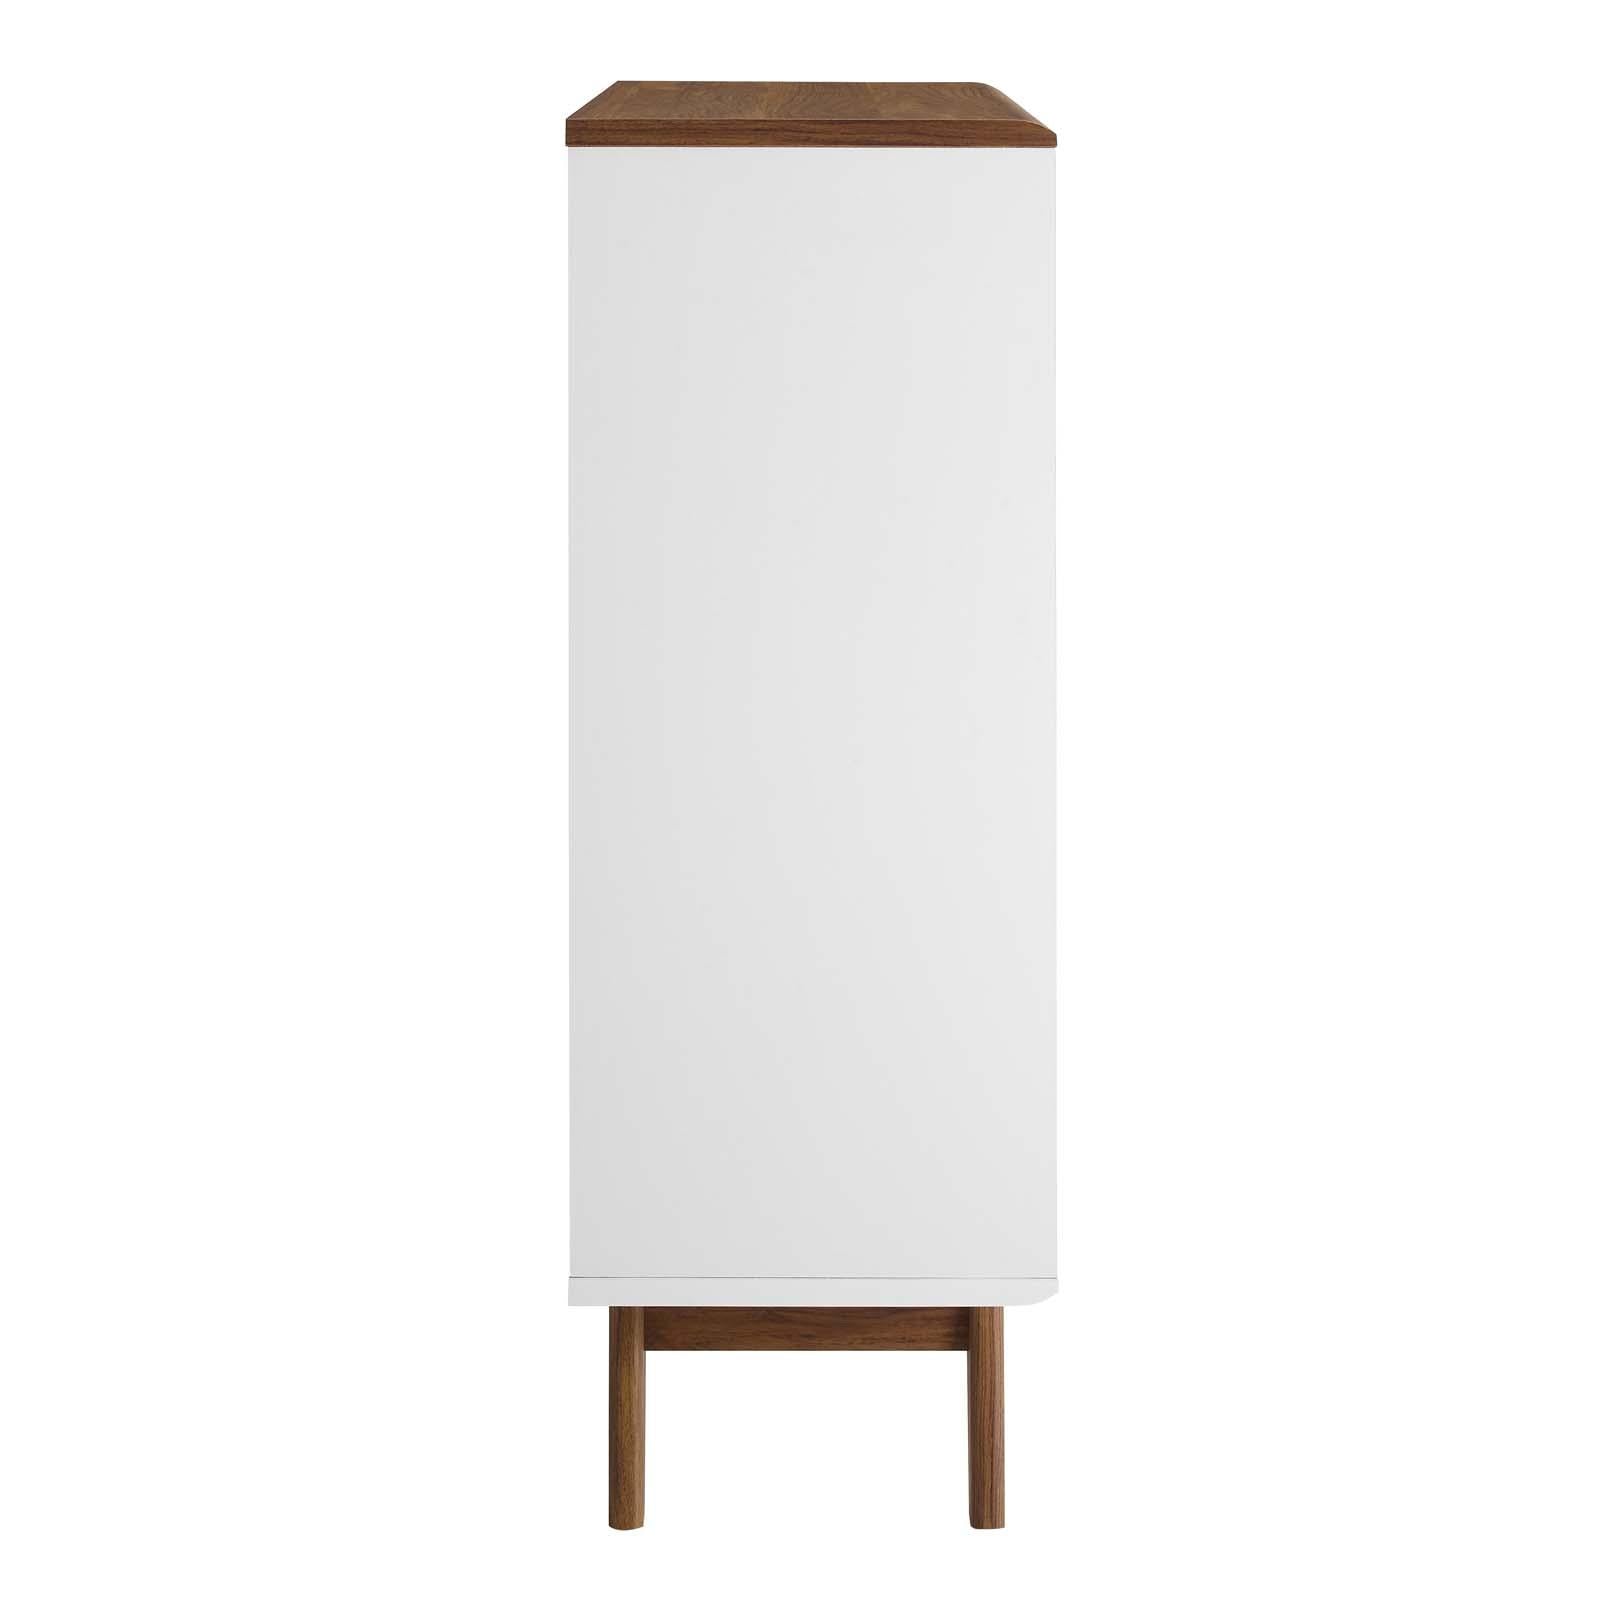 Modway Furniture Modern Render Three-Tier Display Storage Cabinet Stand - EEI-3343